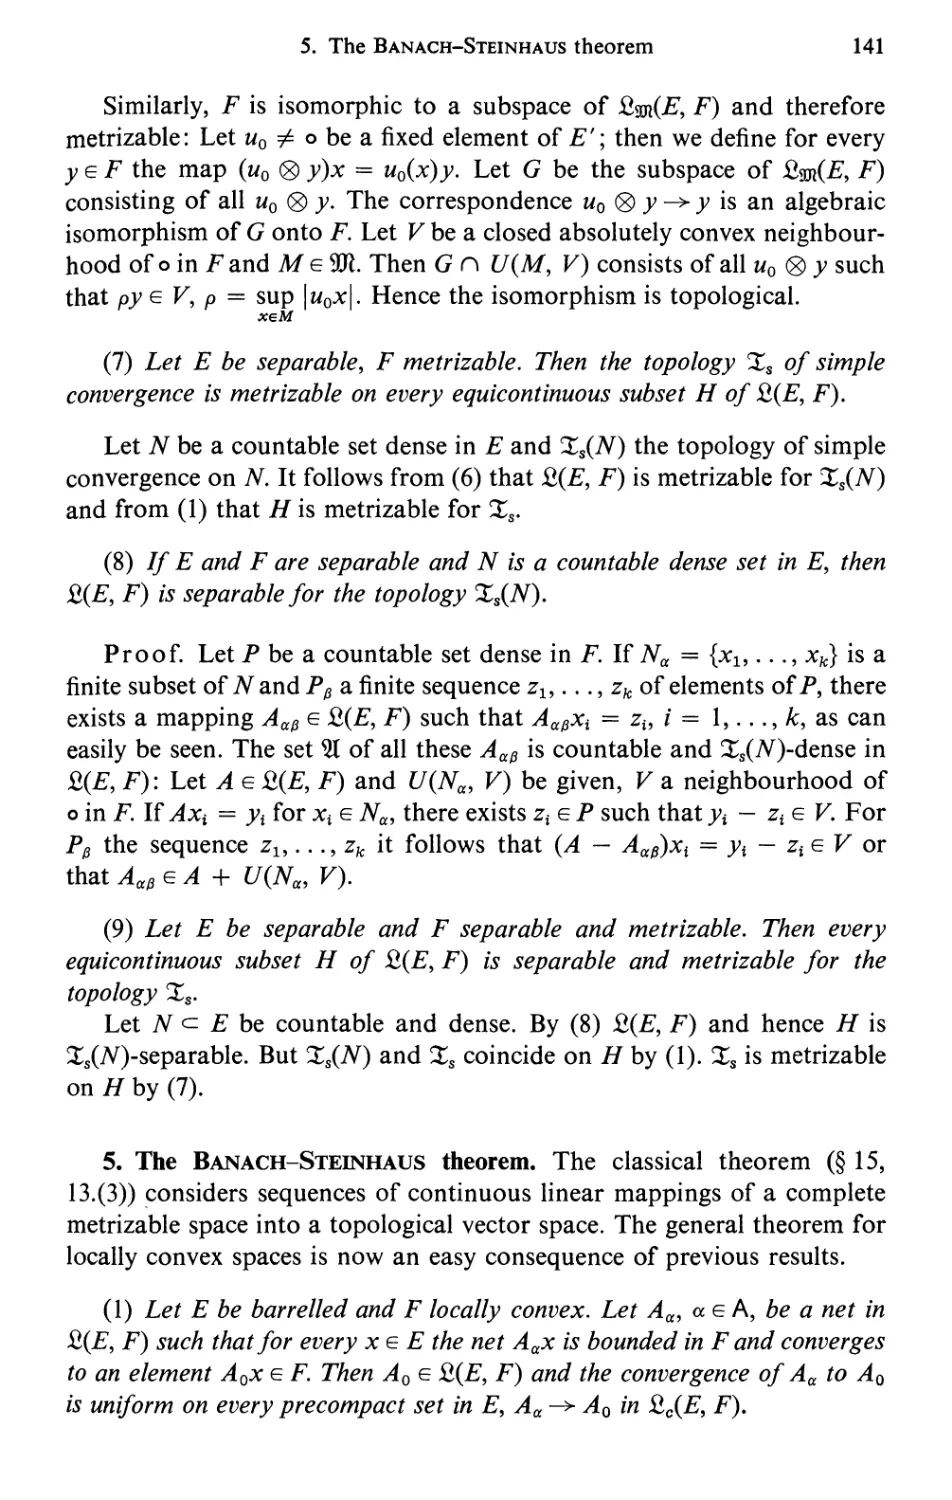 5. The Banach-Steinhaus theorem